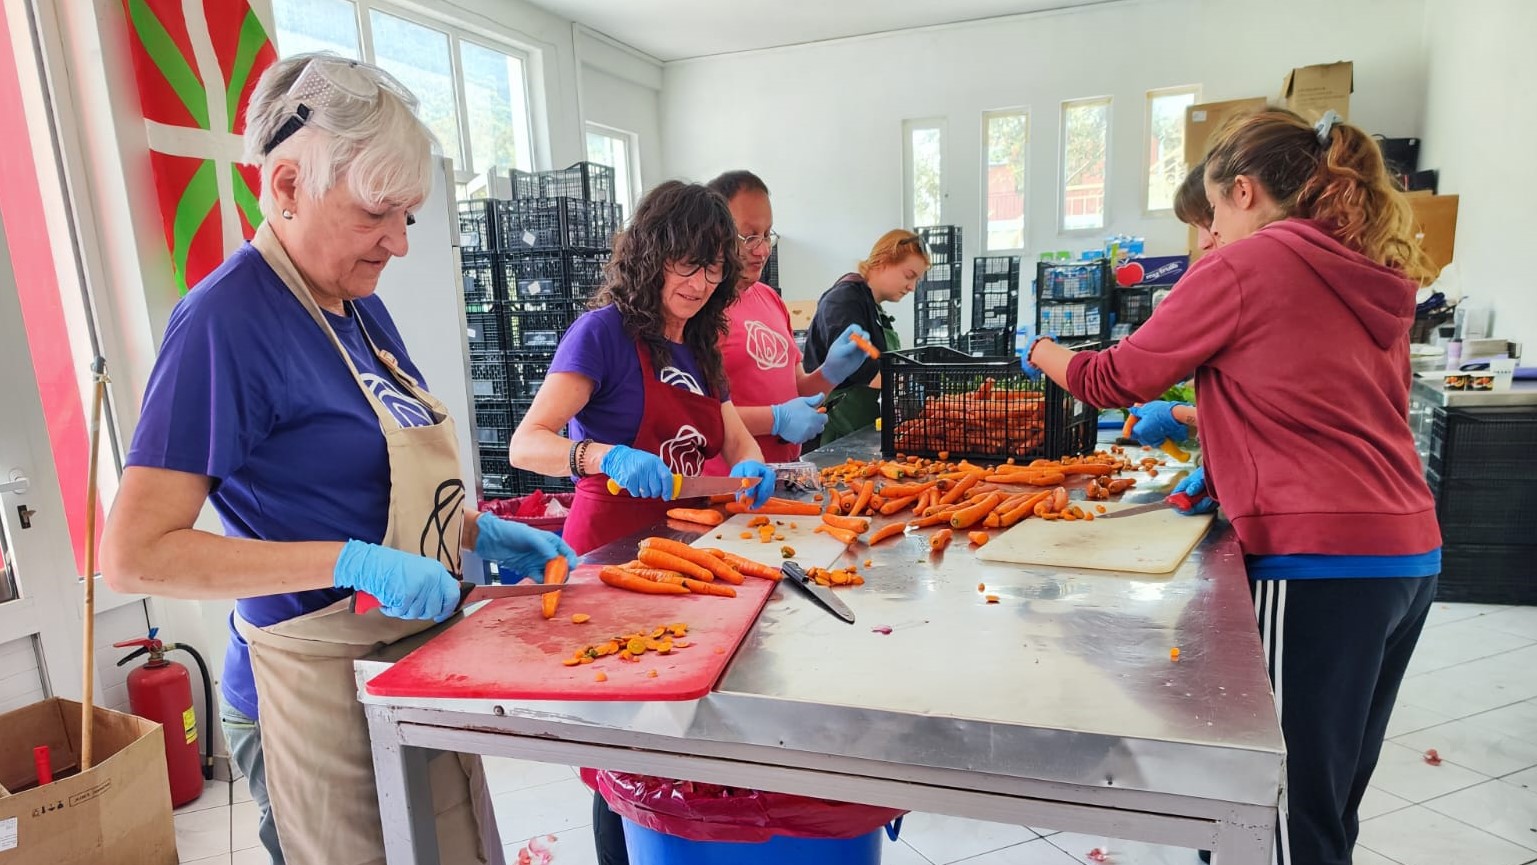 El Ayuntamiento de Errenteria concede una ayuda de 8.000 € para que el proyecto Zaporeak siga dando comidas en los campos de personas refugiadas